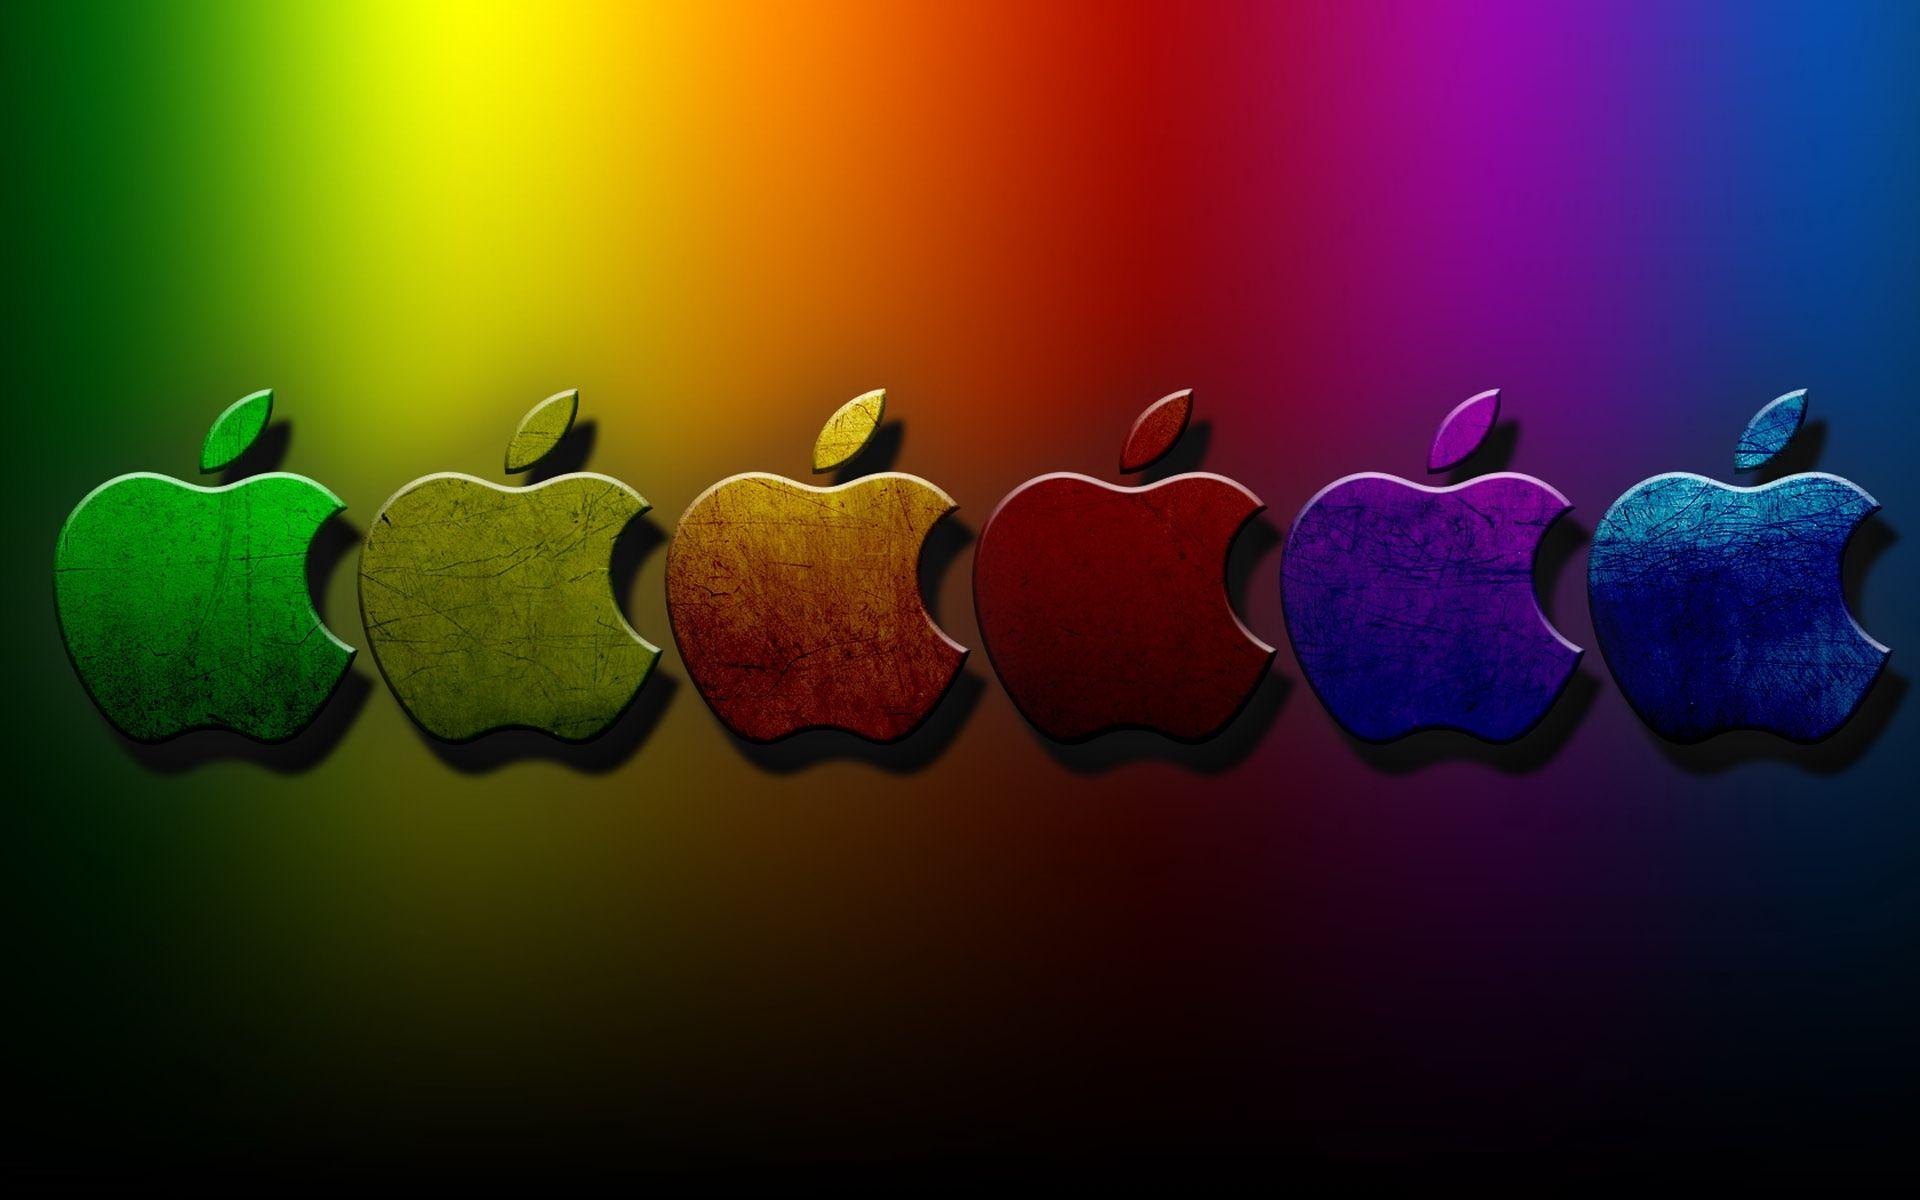 Apple Flower Logo - Wallpaper : illustration, heart, logo, circle, brand, set, light ...